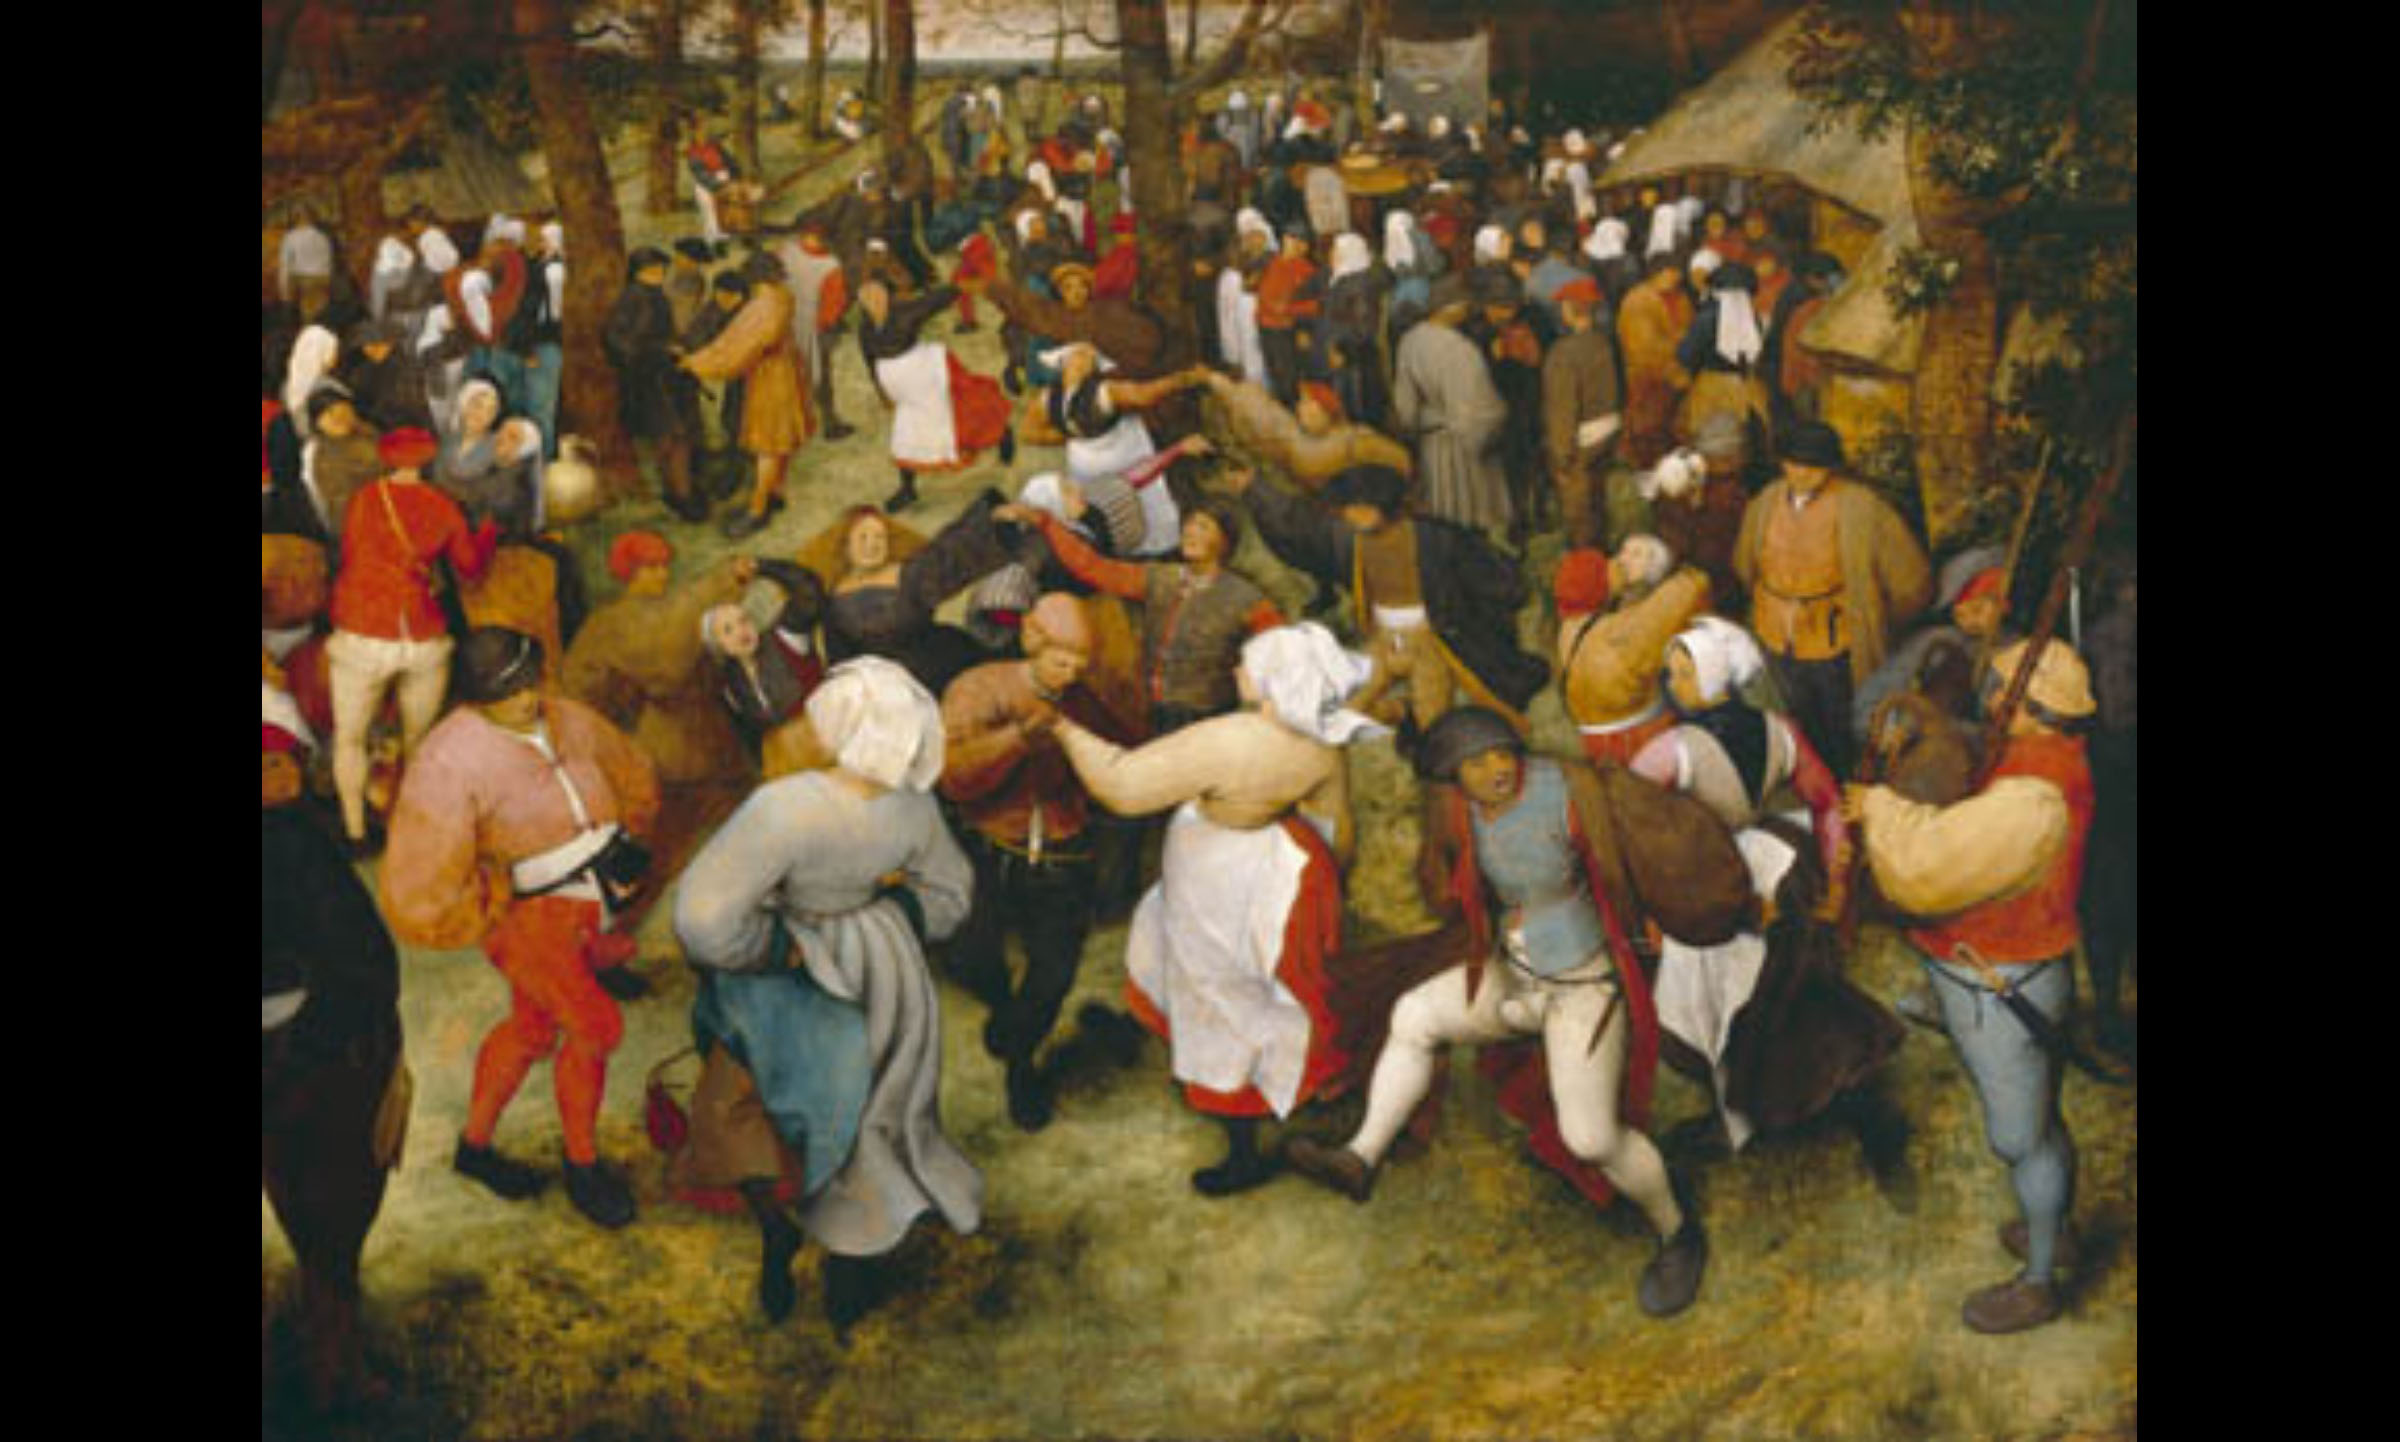  "The Wedding Dance" – Peasant dance in Netherlands&nbsp; (Pieter Bruegel the Elder, 1566) 